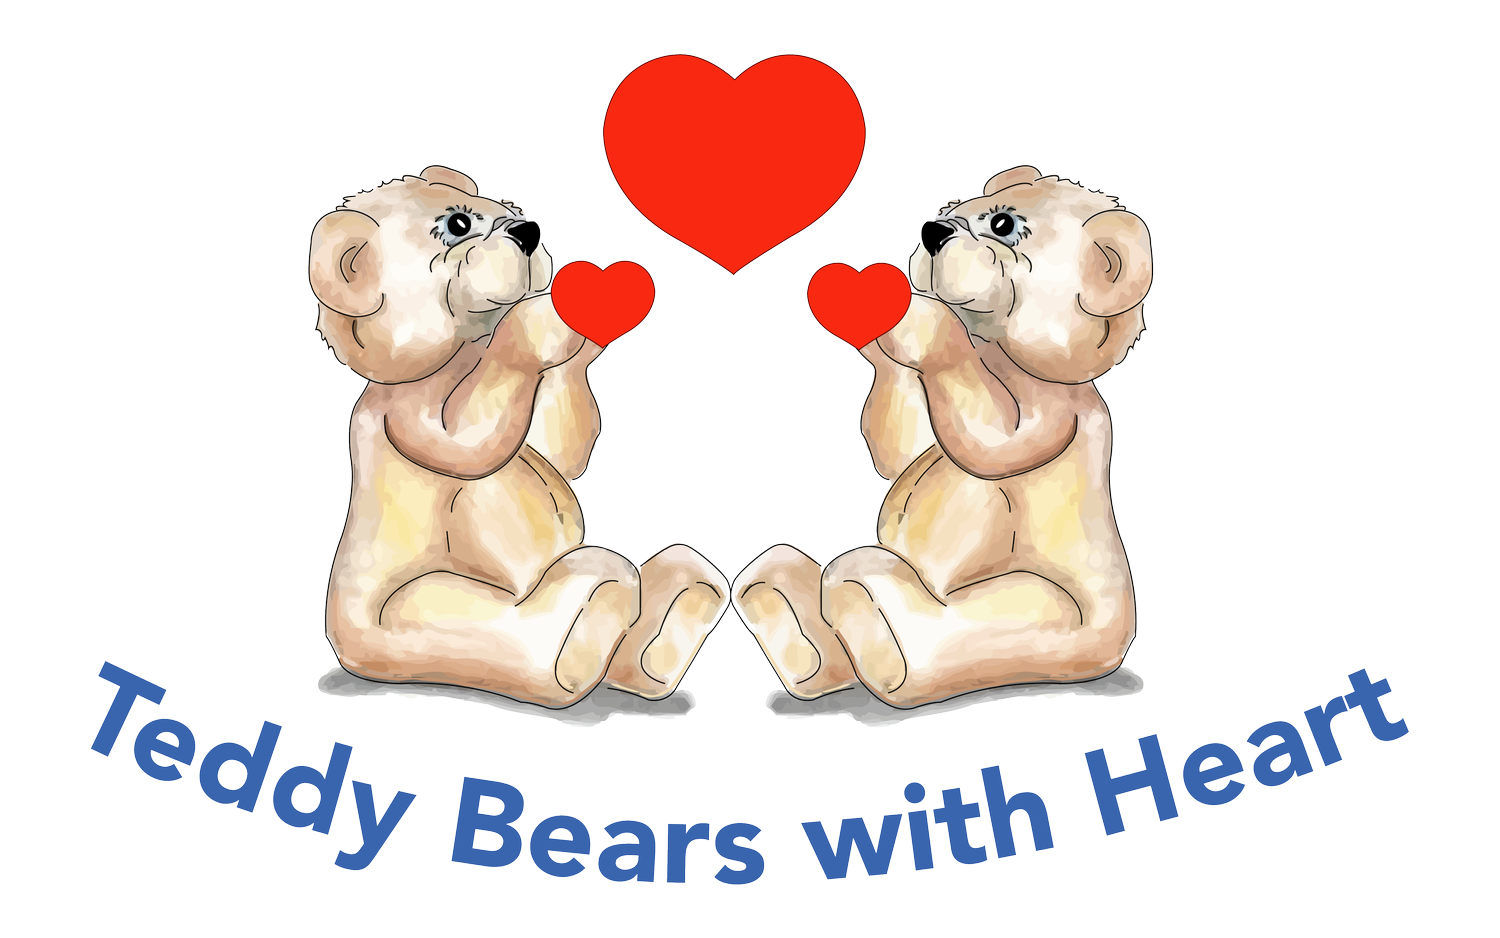  Teddy Bears with Heart